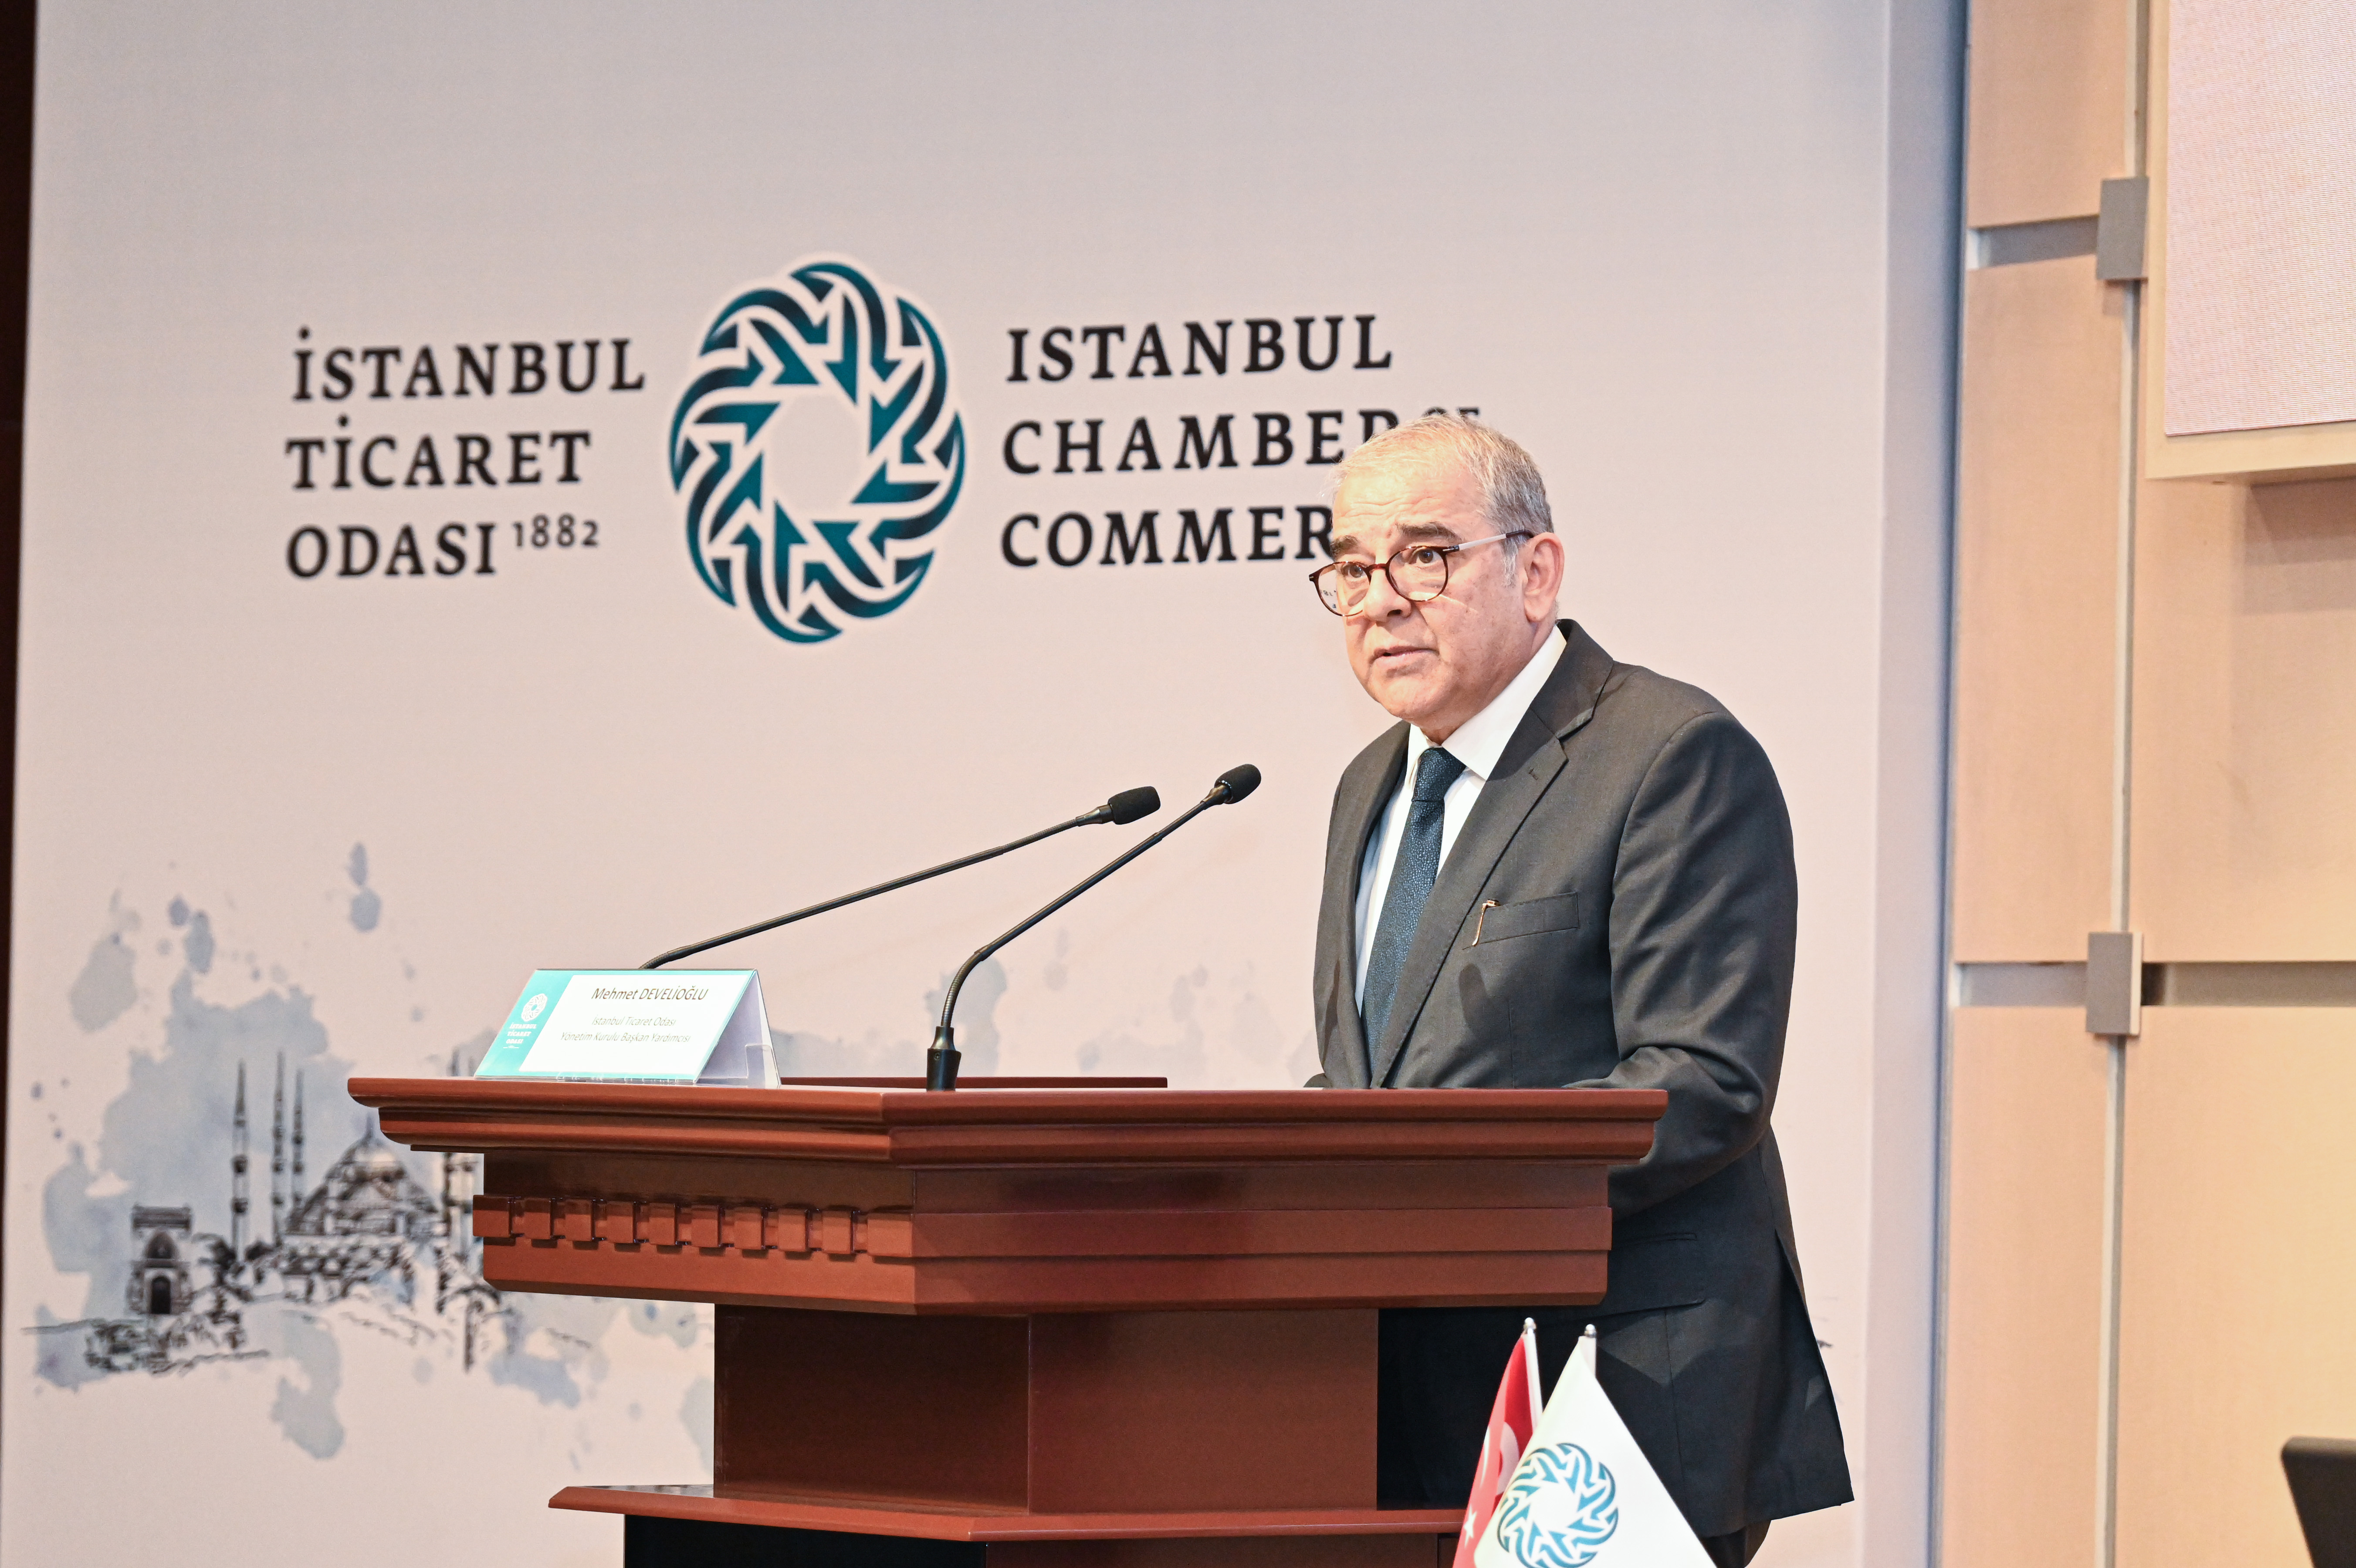 Yeşil Dönüşüm ve SKDM Bilgilendirme ve İstişare Toplantılarının İstanbul Ticaret Odası’nda gerçekleştirildi